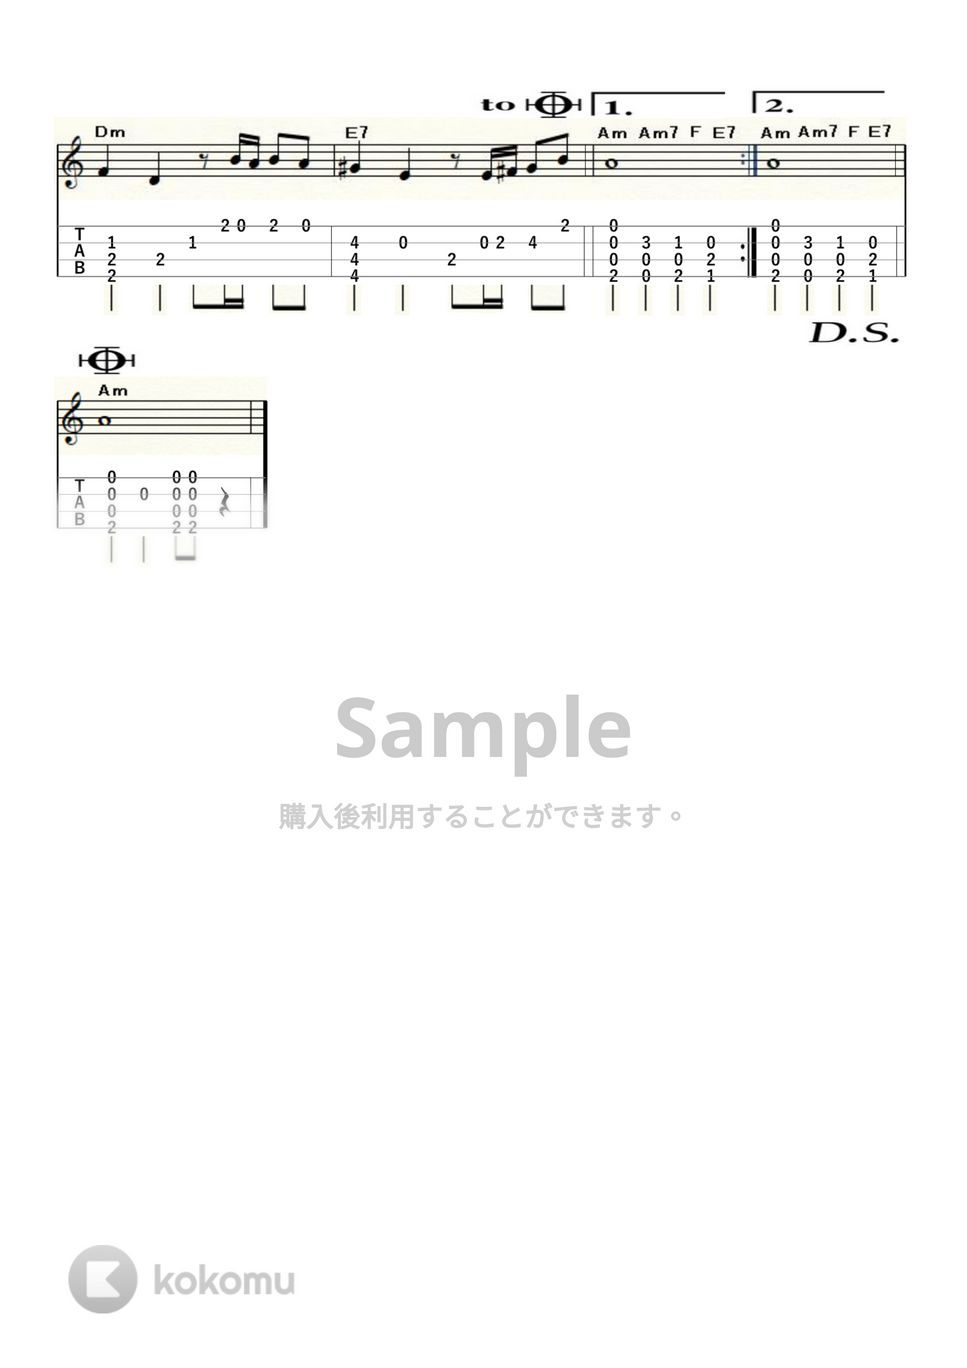 ダニエル・ビダル - 天使のらくがき (ｳｸﾚﾚｿﾛ / High-G・Low-G / 初級～中級) by ukulelepapa